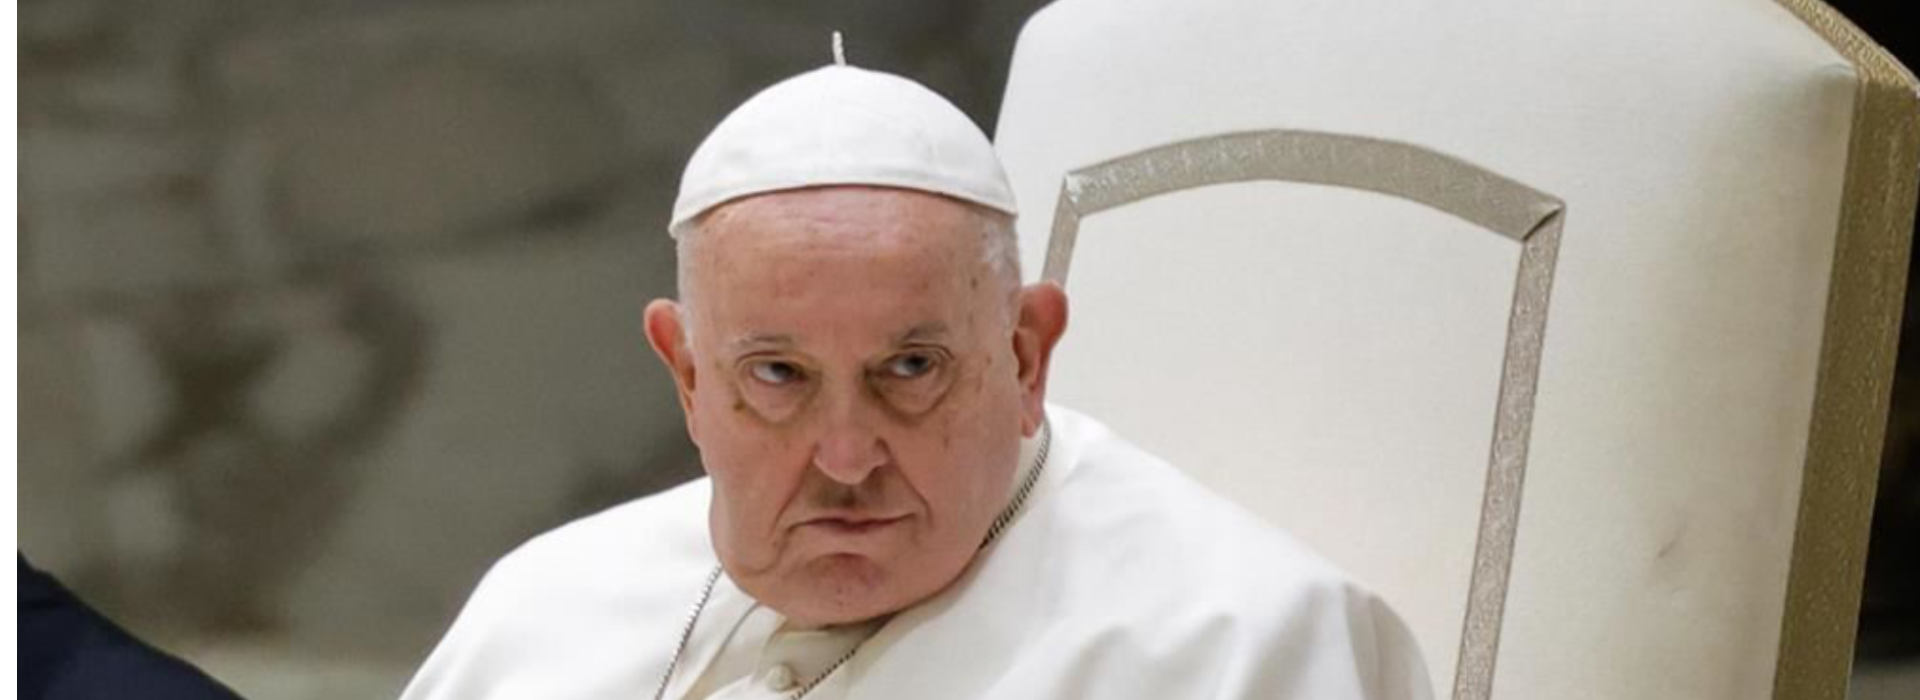 Il Conclave del 2005: la strategia segreta di Papa Francesco e il destino di Ratzinger